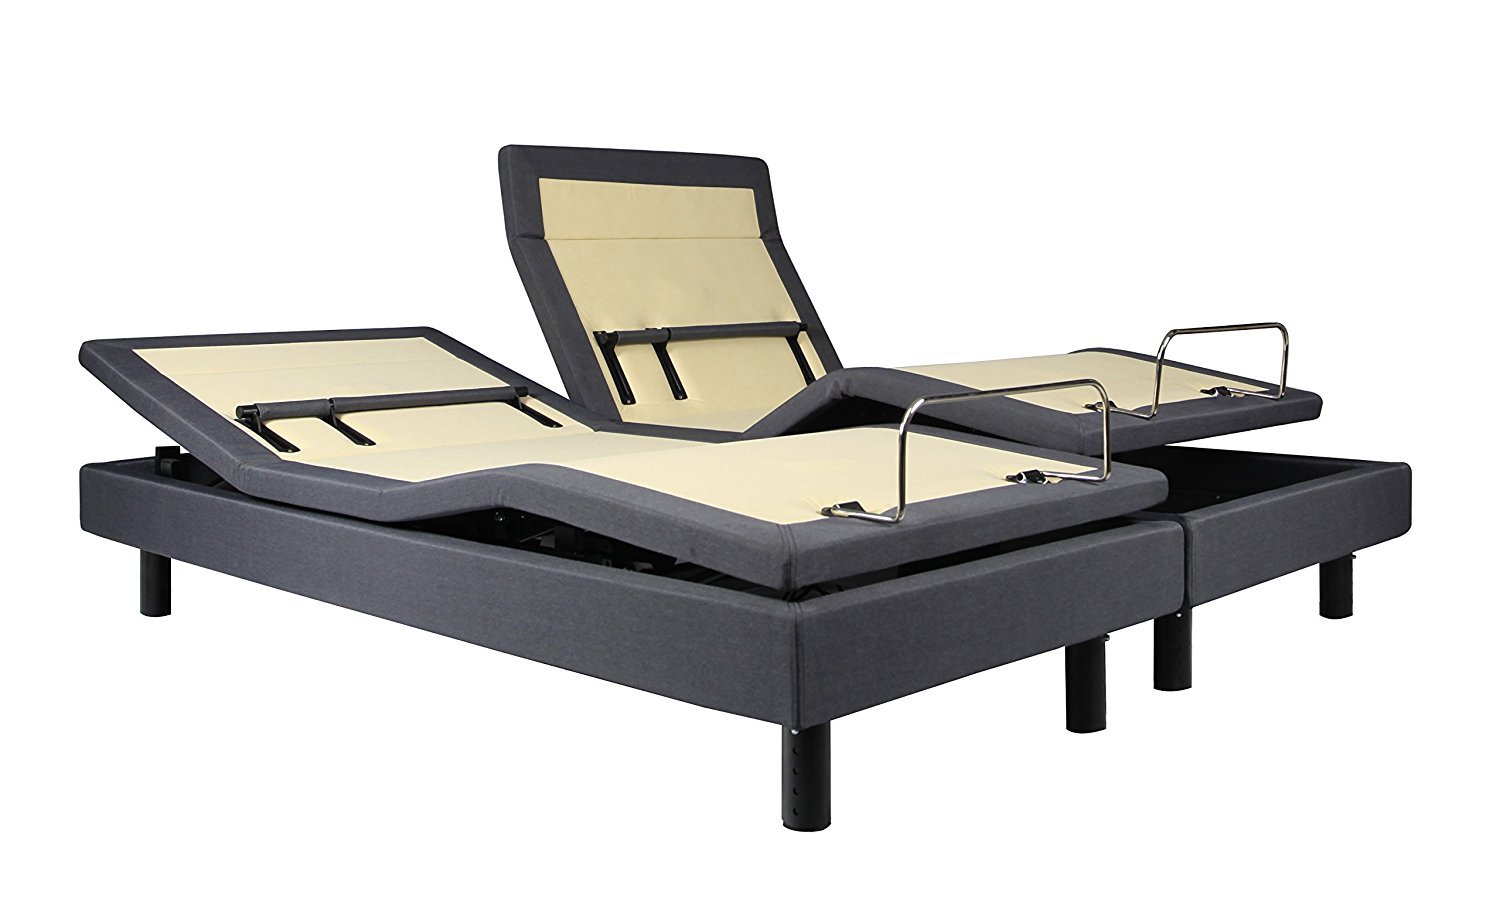 dynasty mattress dm9000s adjustable bed base split king